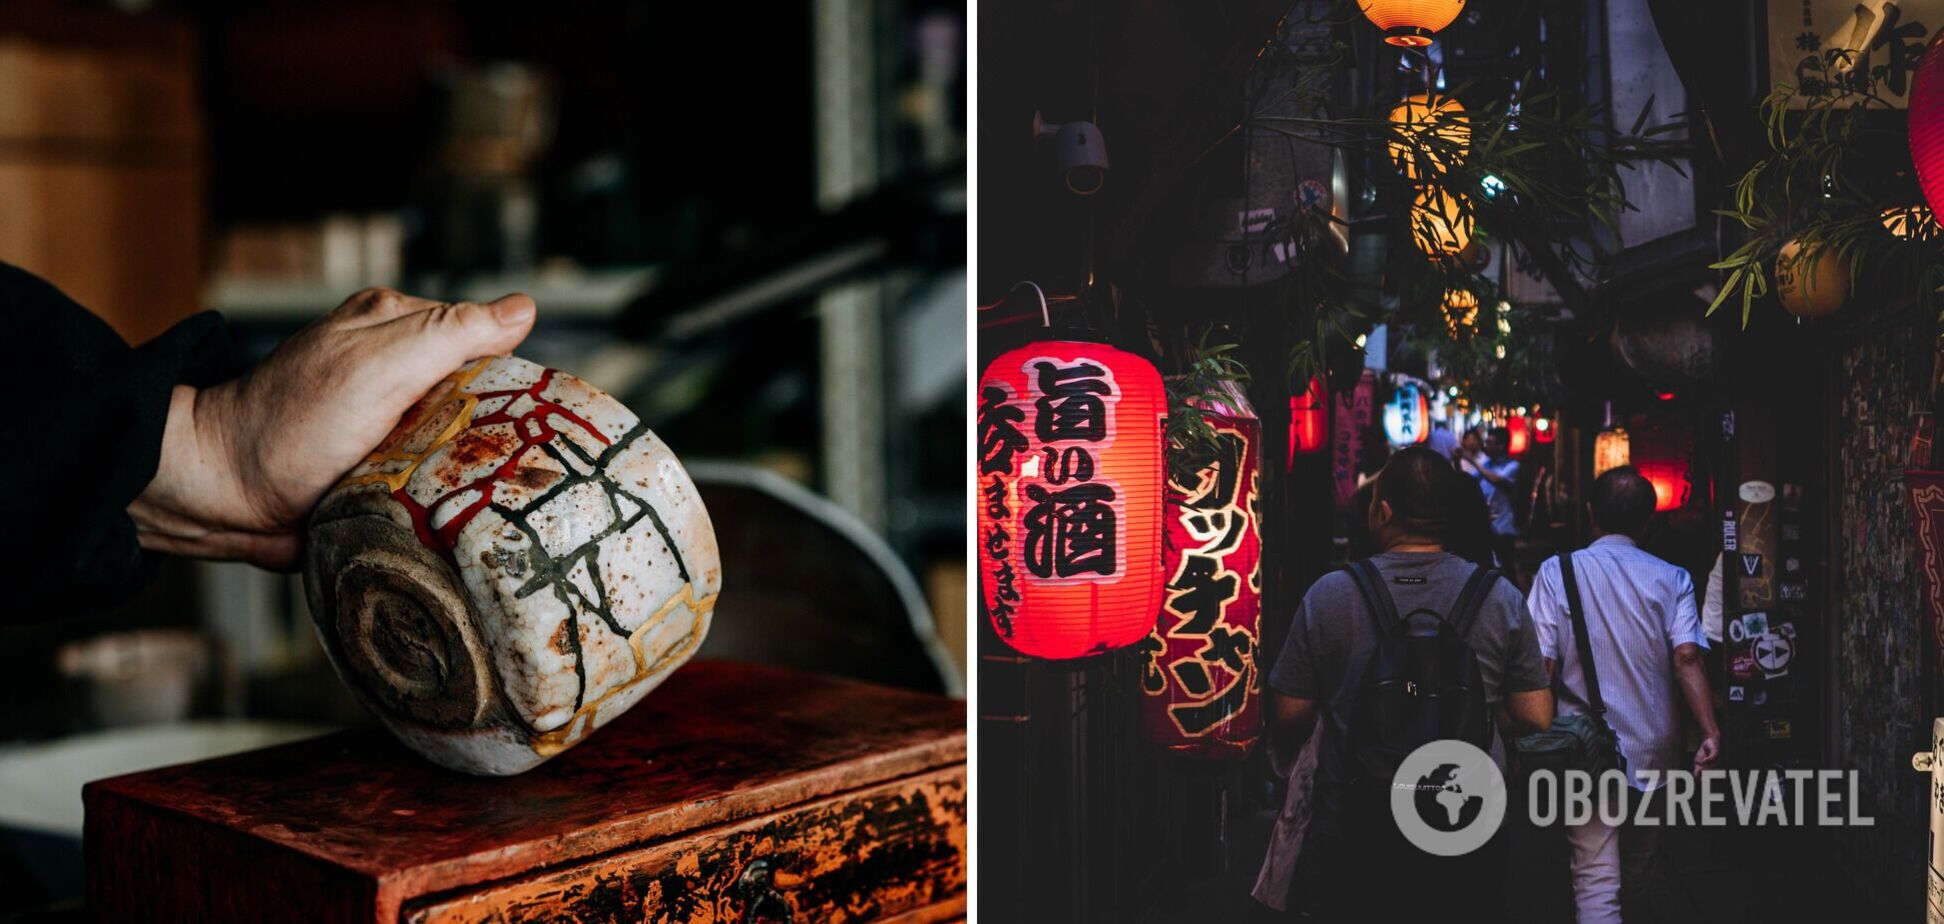 Роботи-офіціанти, вражаючі хмарочоси та старовинні храми: чим дивує туристів Токіо 